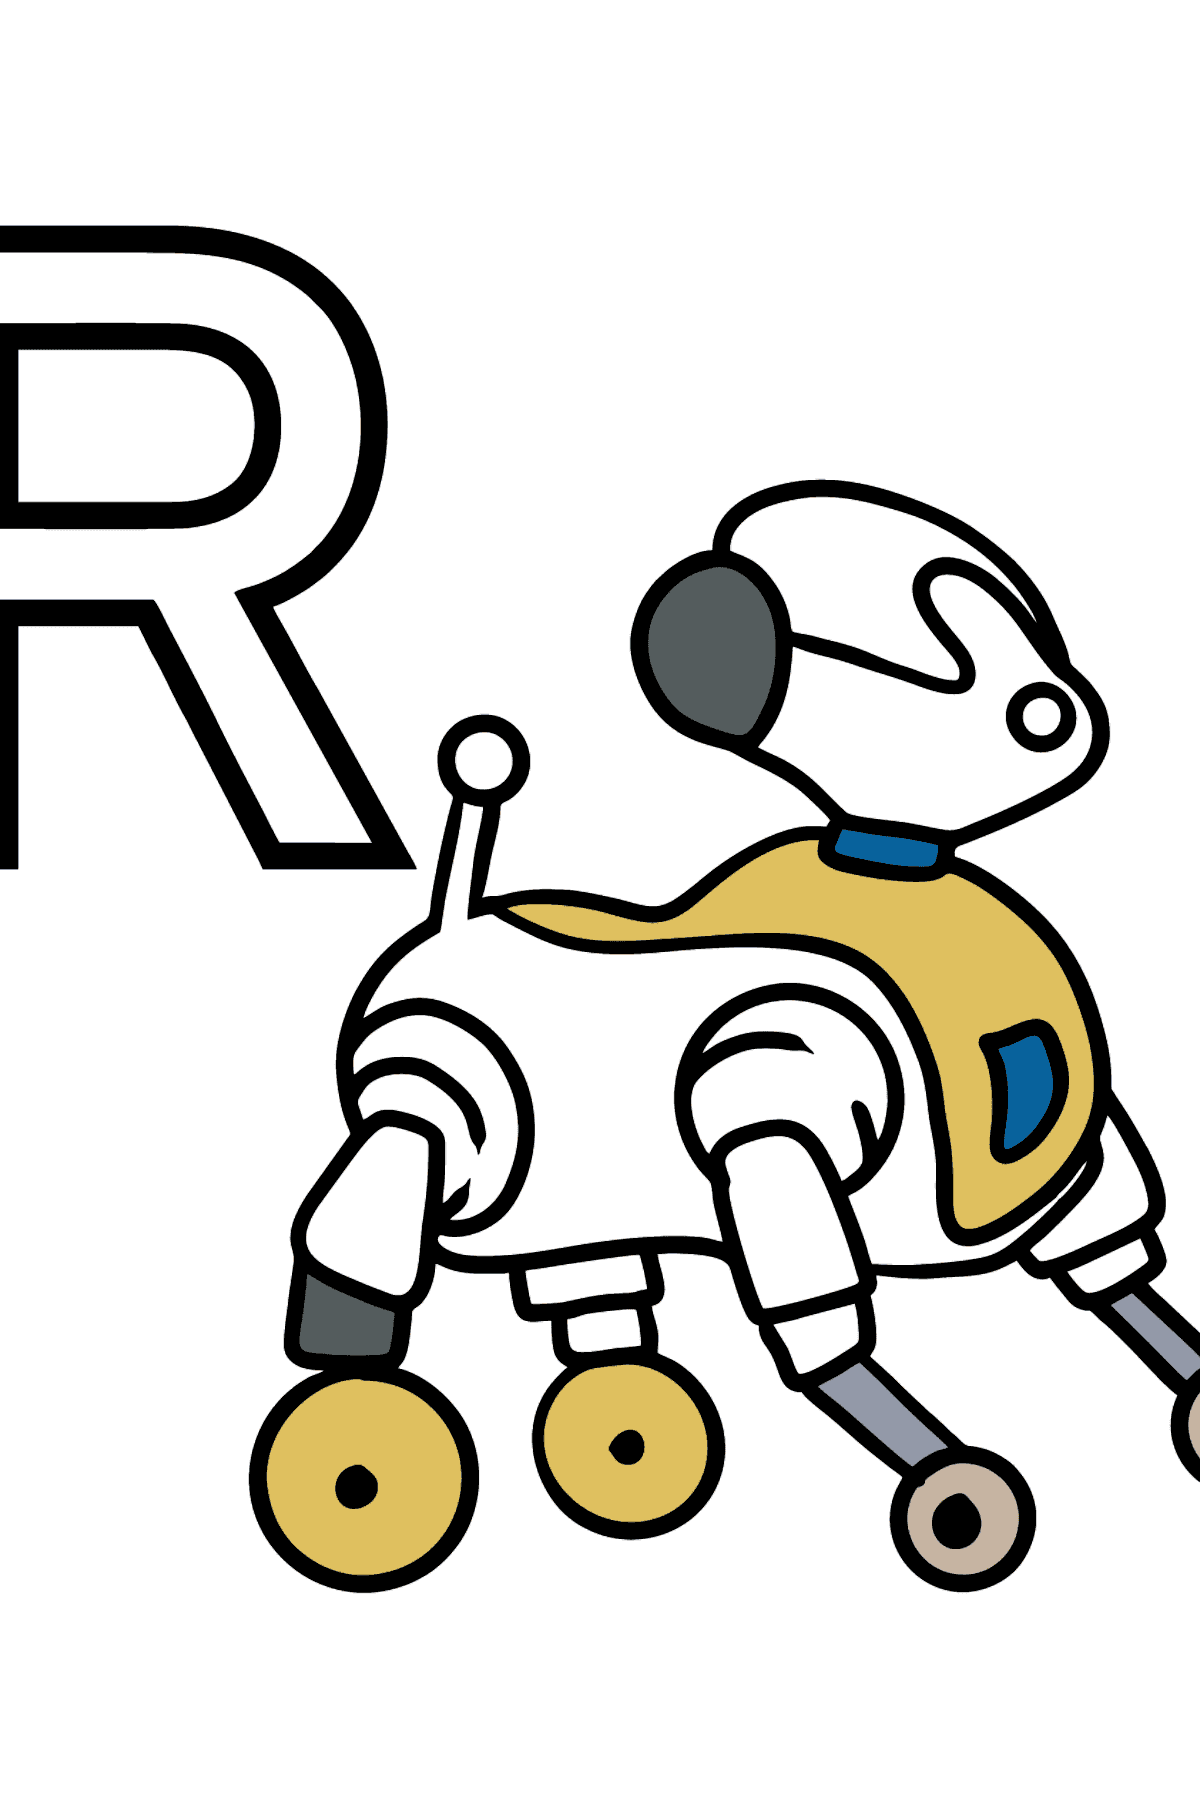 Раскраска Буква R немецкого алфавита - ROBOTER - Картинки для Детей